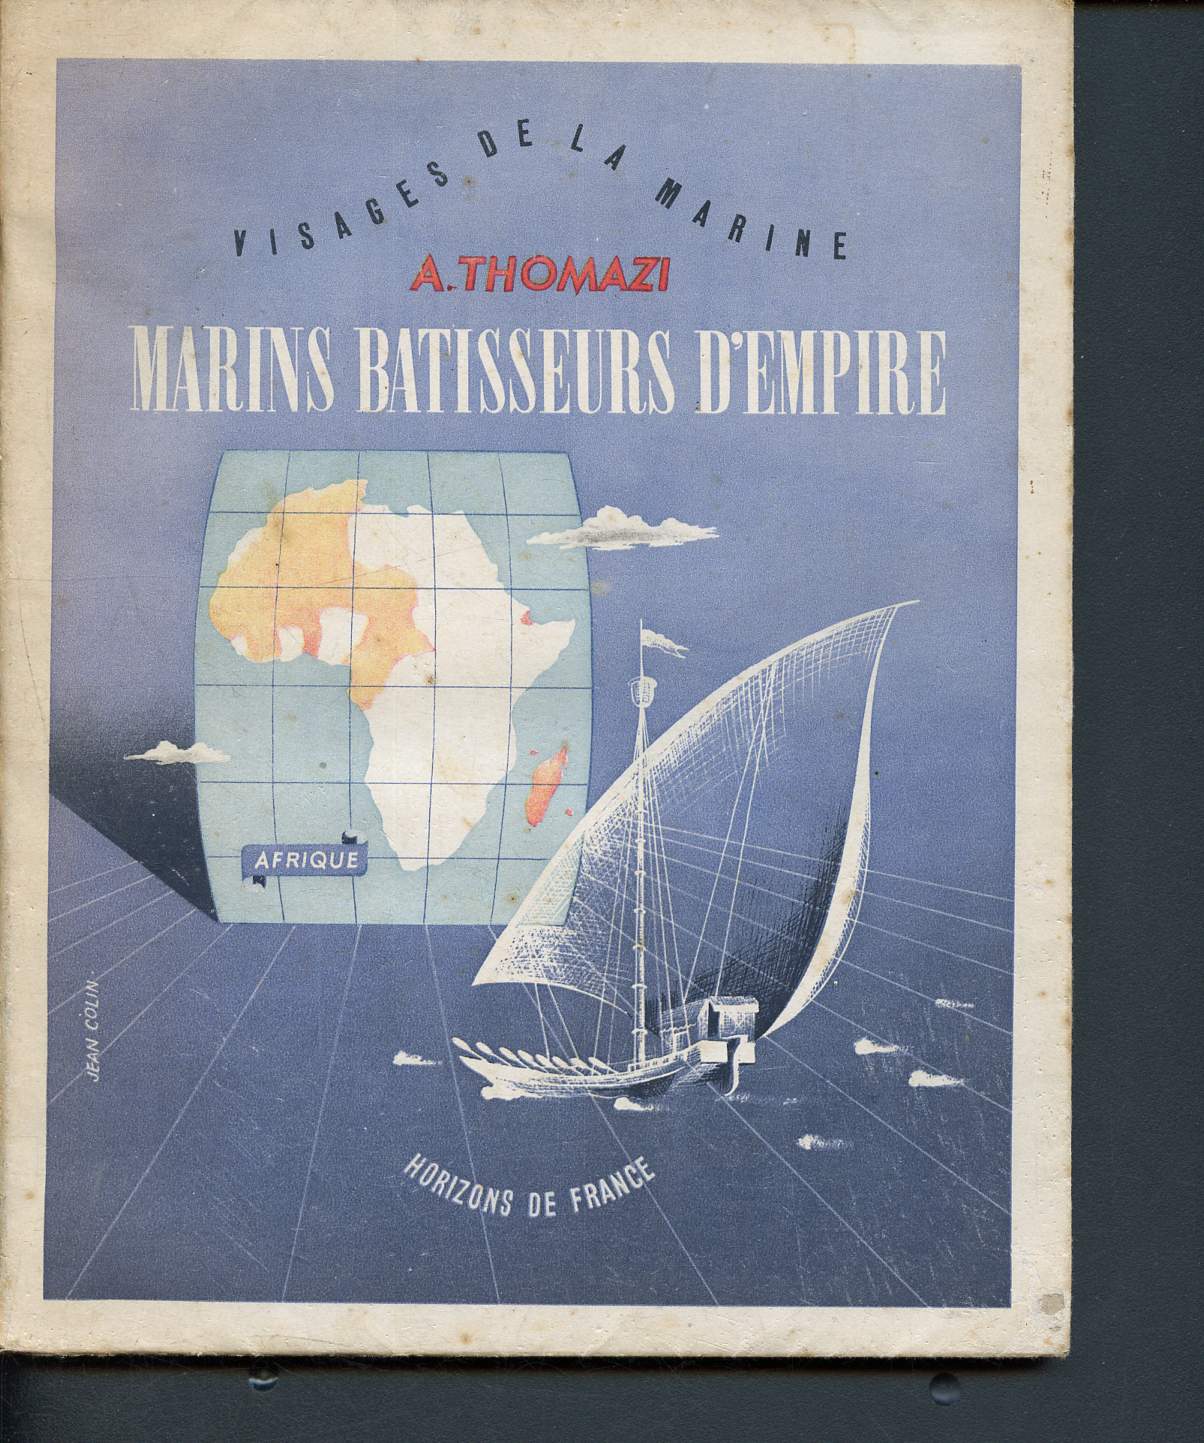 Visages de la marine - marins batisseurs d'empire - II - Afrique